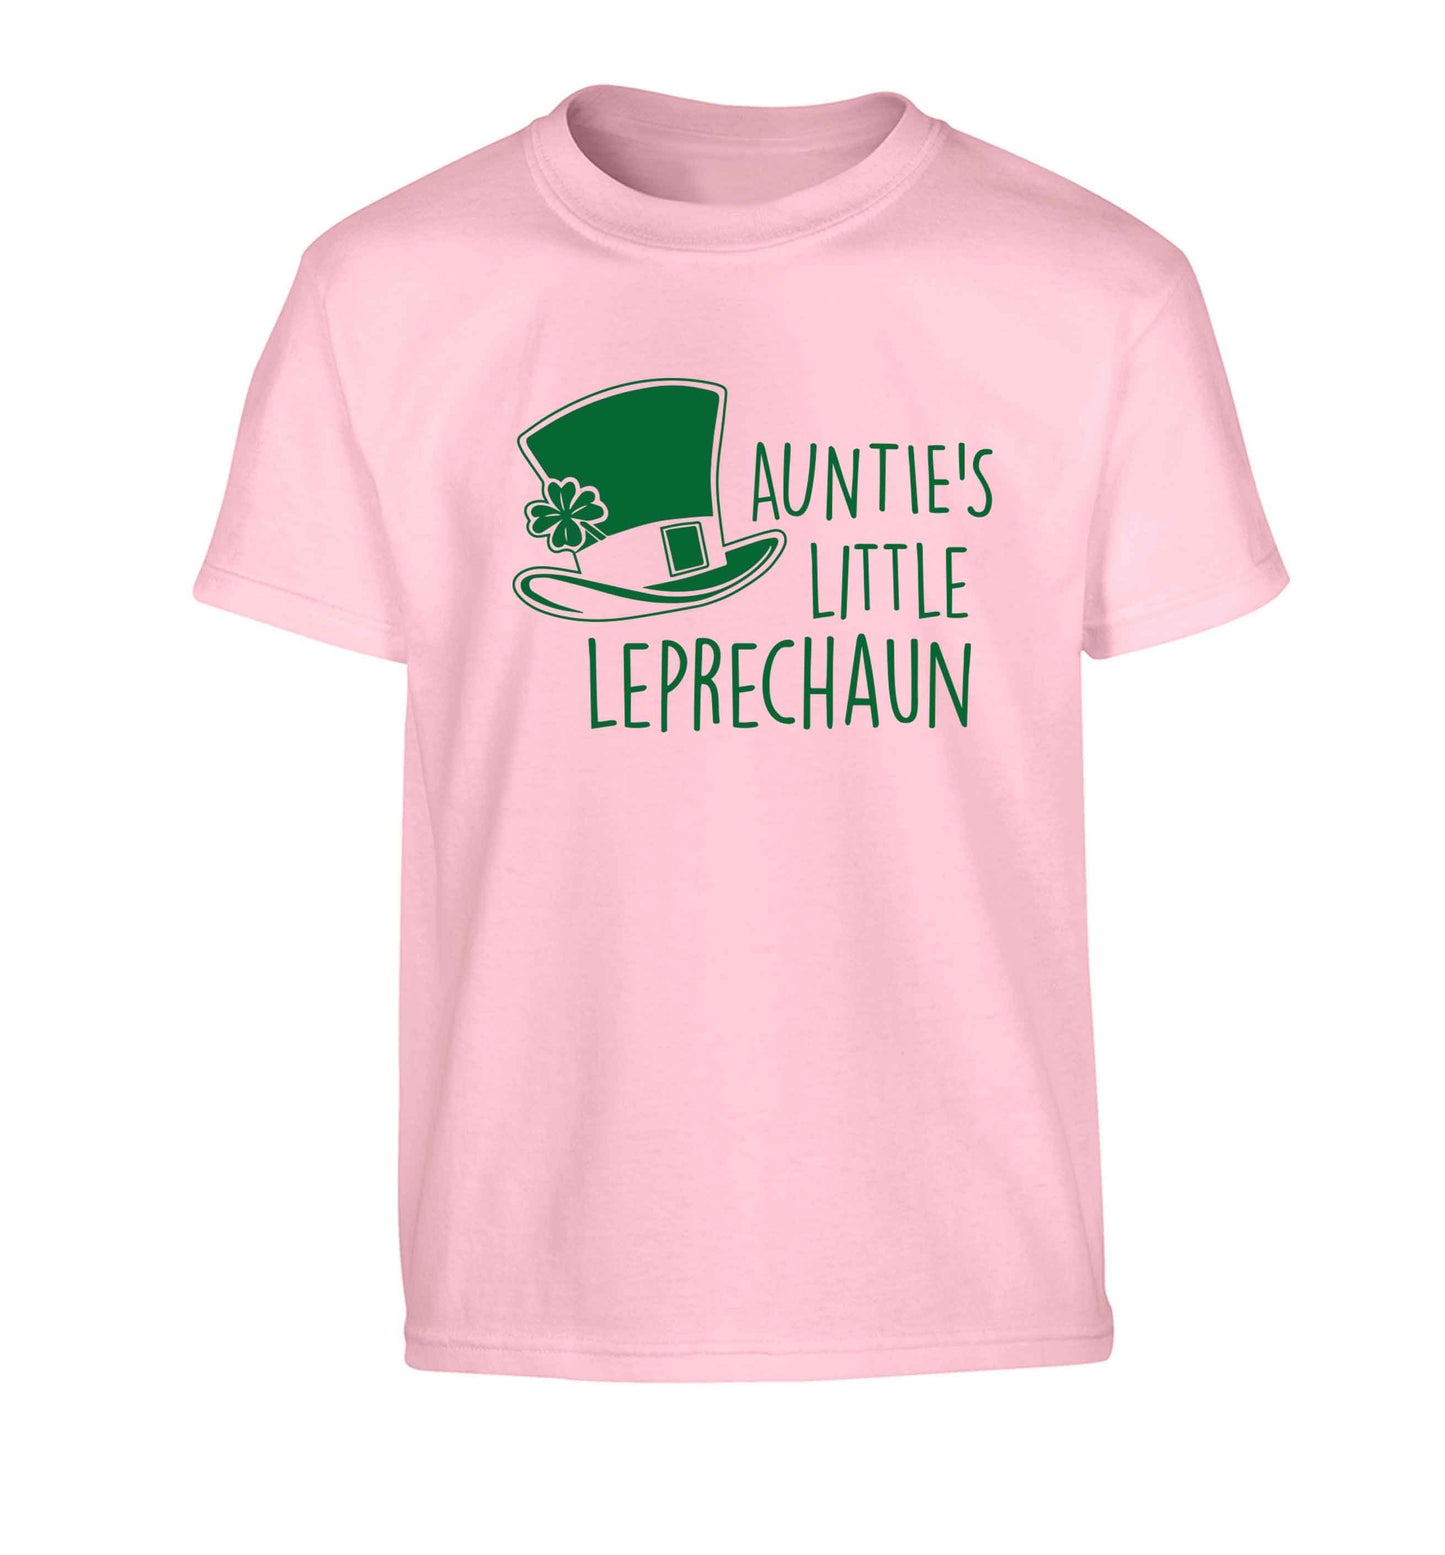 Auntie's little leprechaun Children's light pink Tshirt 12-13 Years